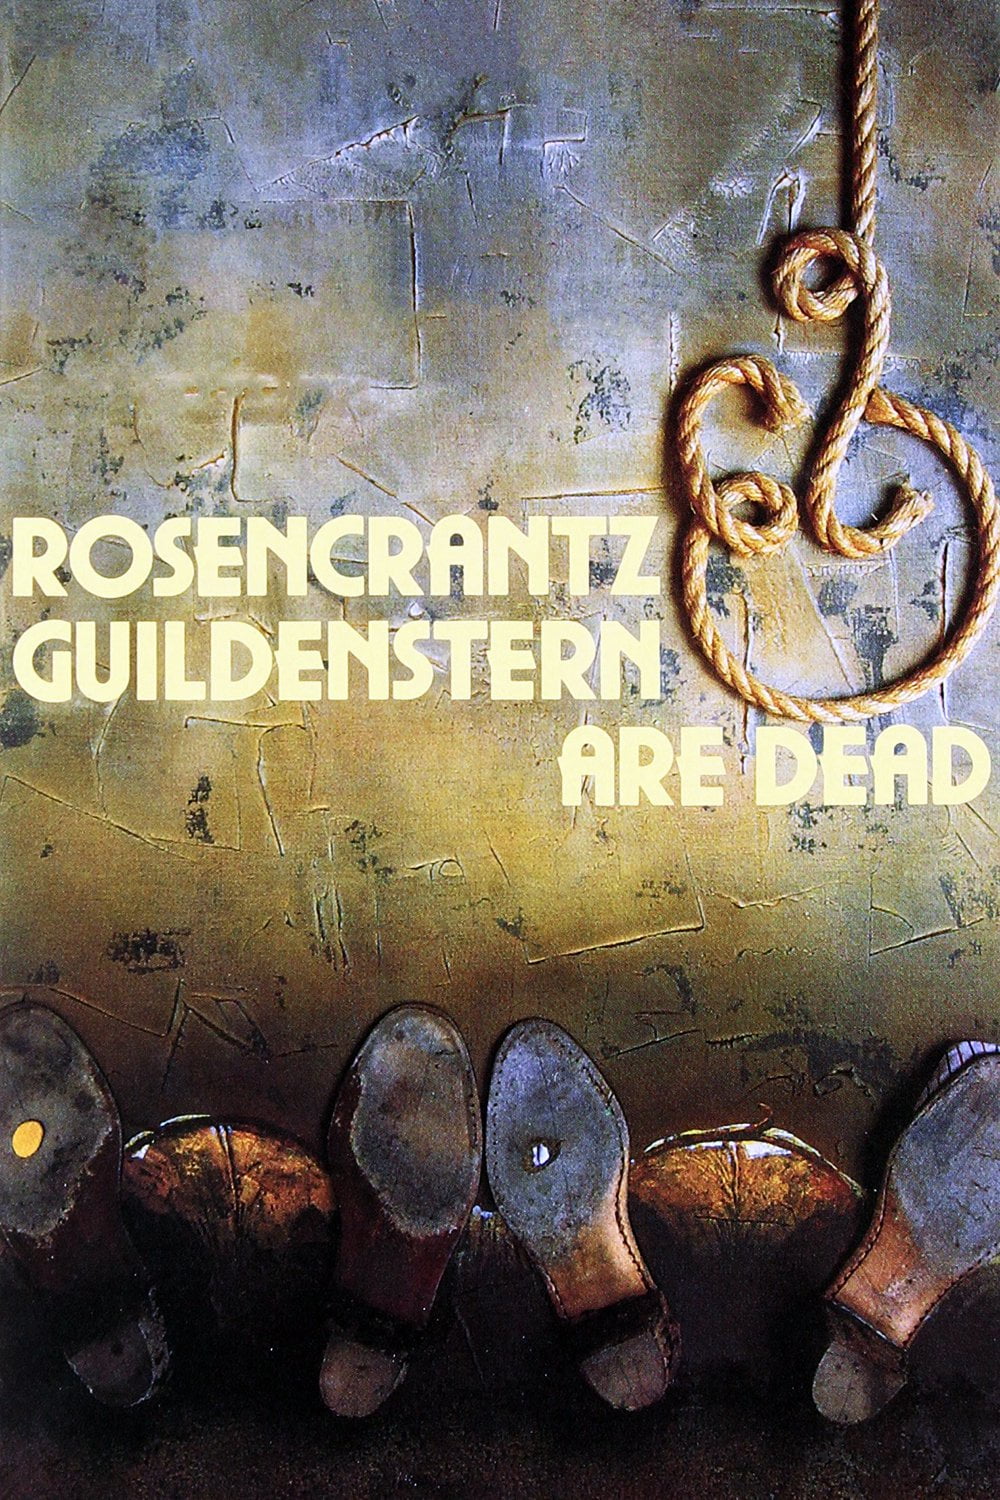 Poster for the filmen "Rosencrantz & Guildenstern Are Dead"